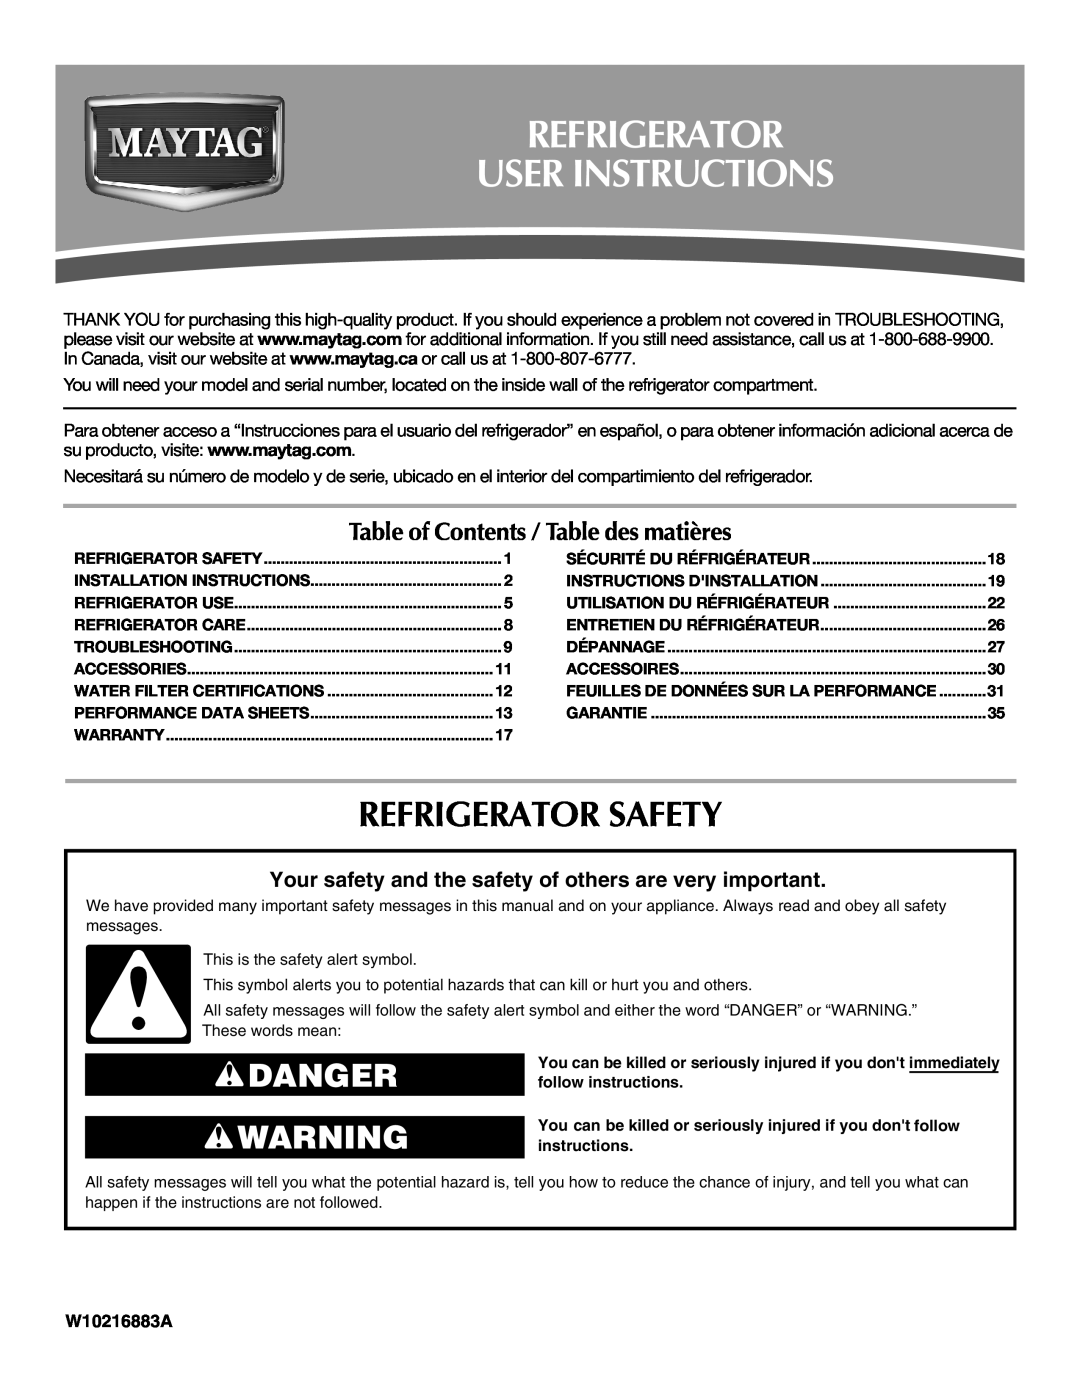 Maytag W10237807A installation instructions Refrigerator User Instructions, Refrigerator Safety, Danger, W10216883A 